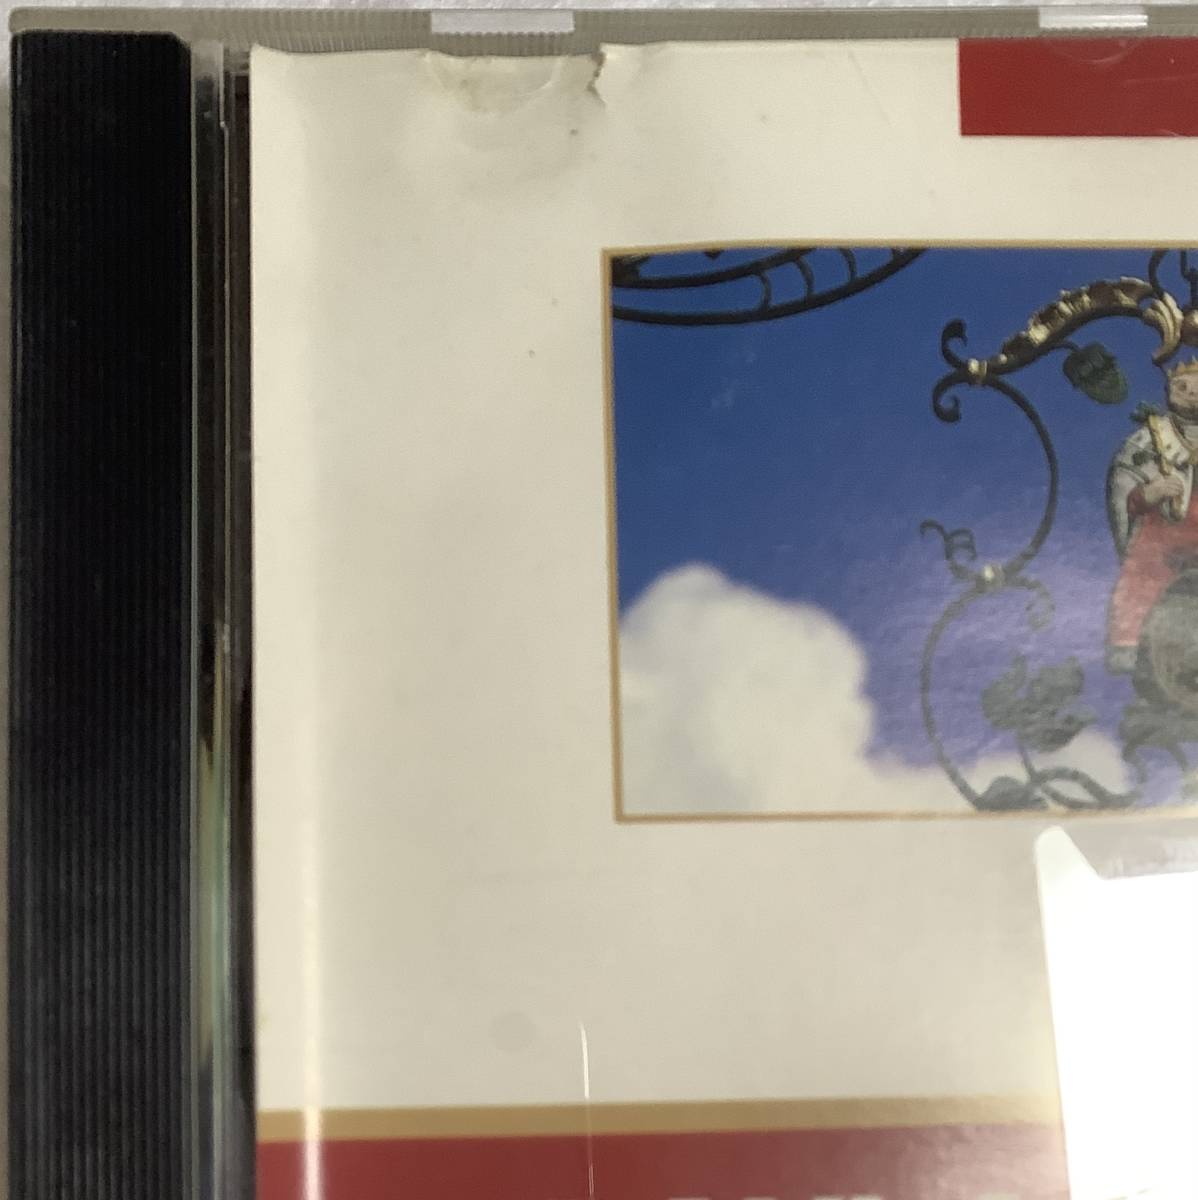 【洋楽CD】 ビッグ・アーティスト・アルバム 『ポール・マッカートニ』◇バンド・オン・ザ・ラン 他 GR-31/CD-16391_画像2